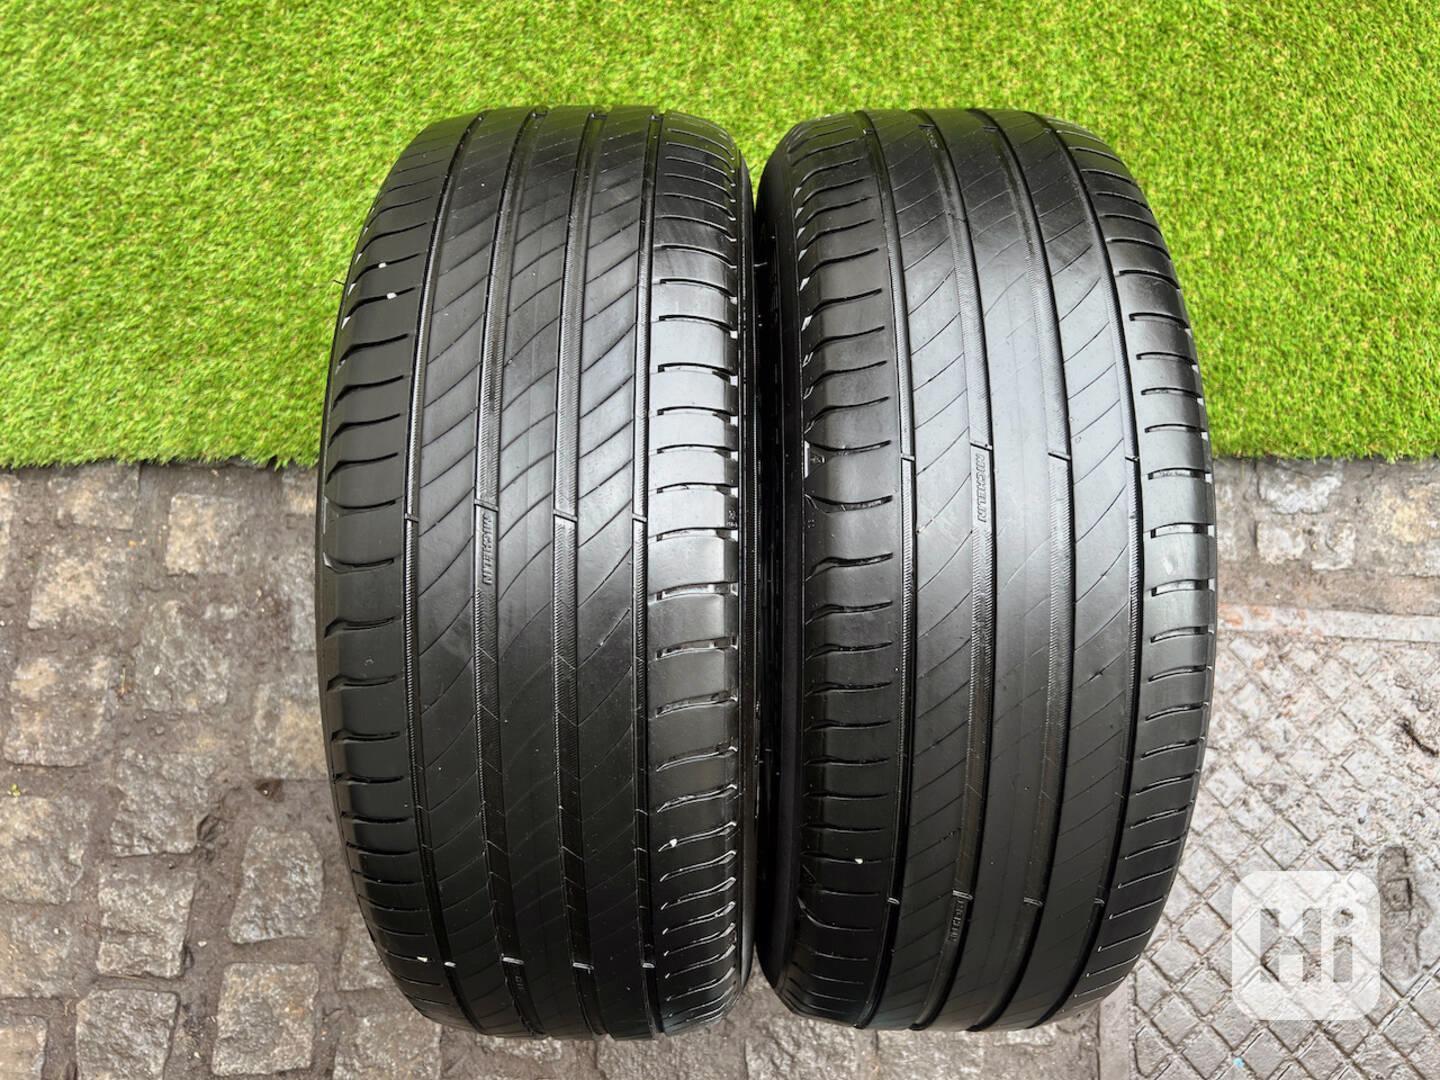 215 55 16 R16 letní pneumatiky Michelin Primacy 4 - foto 1